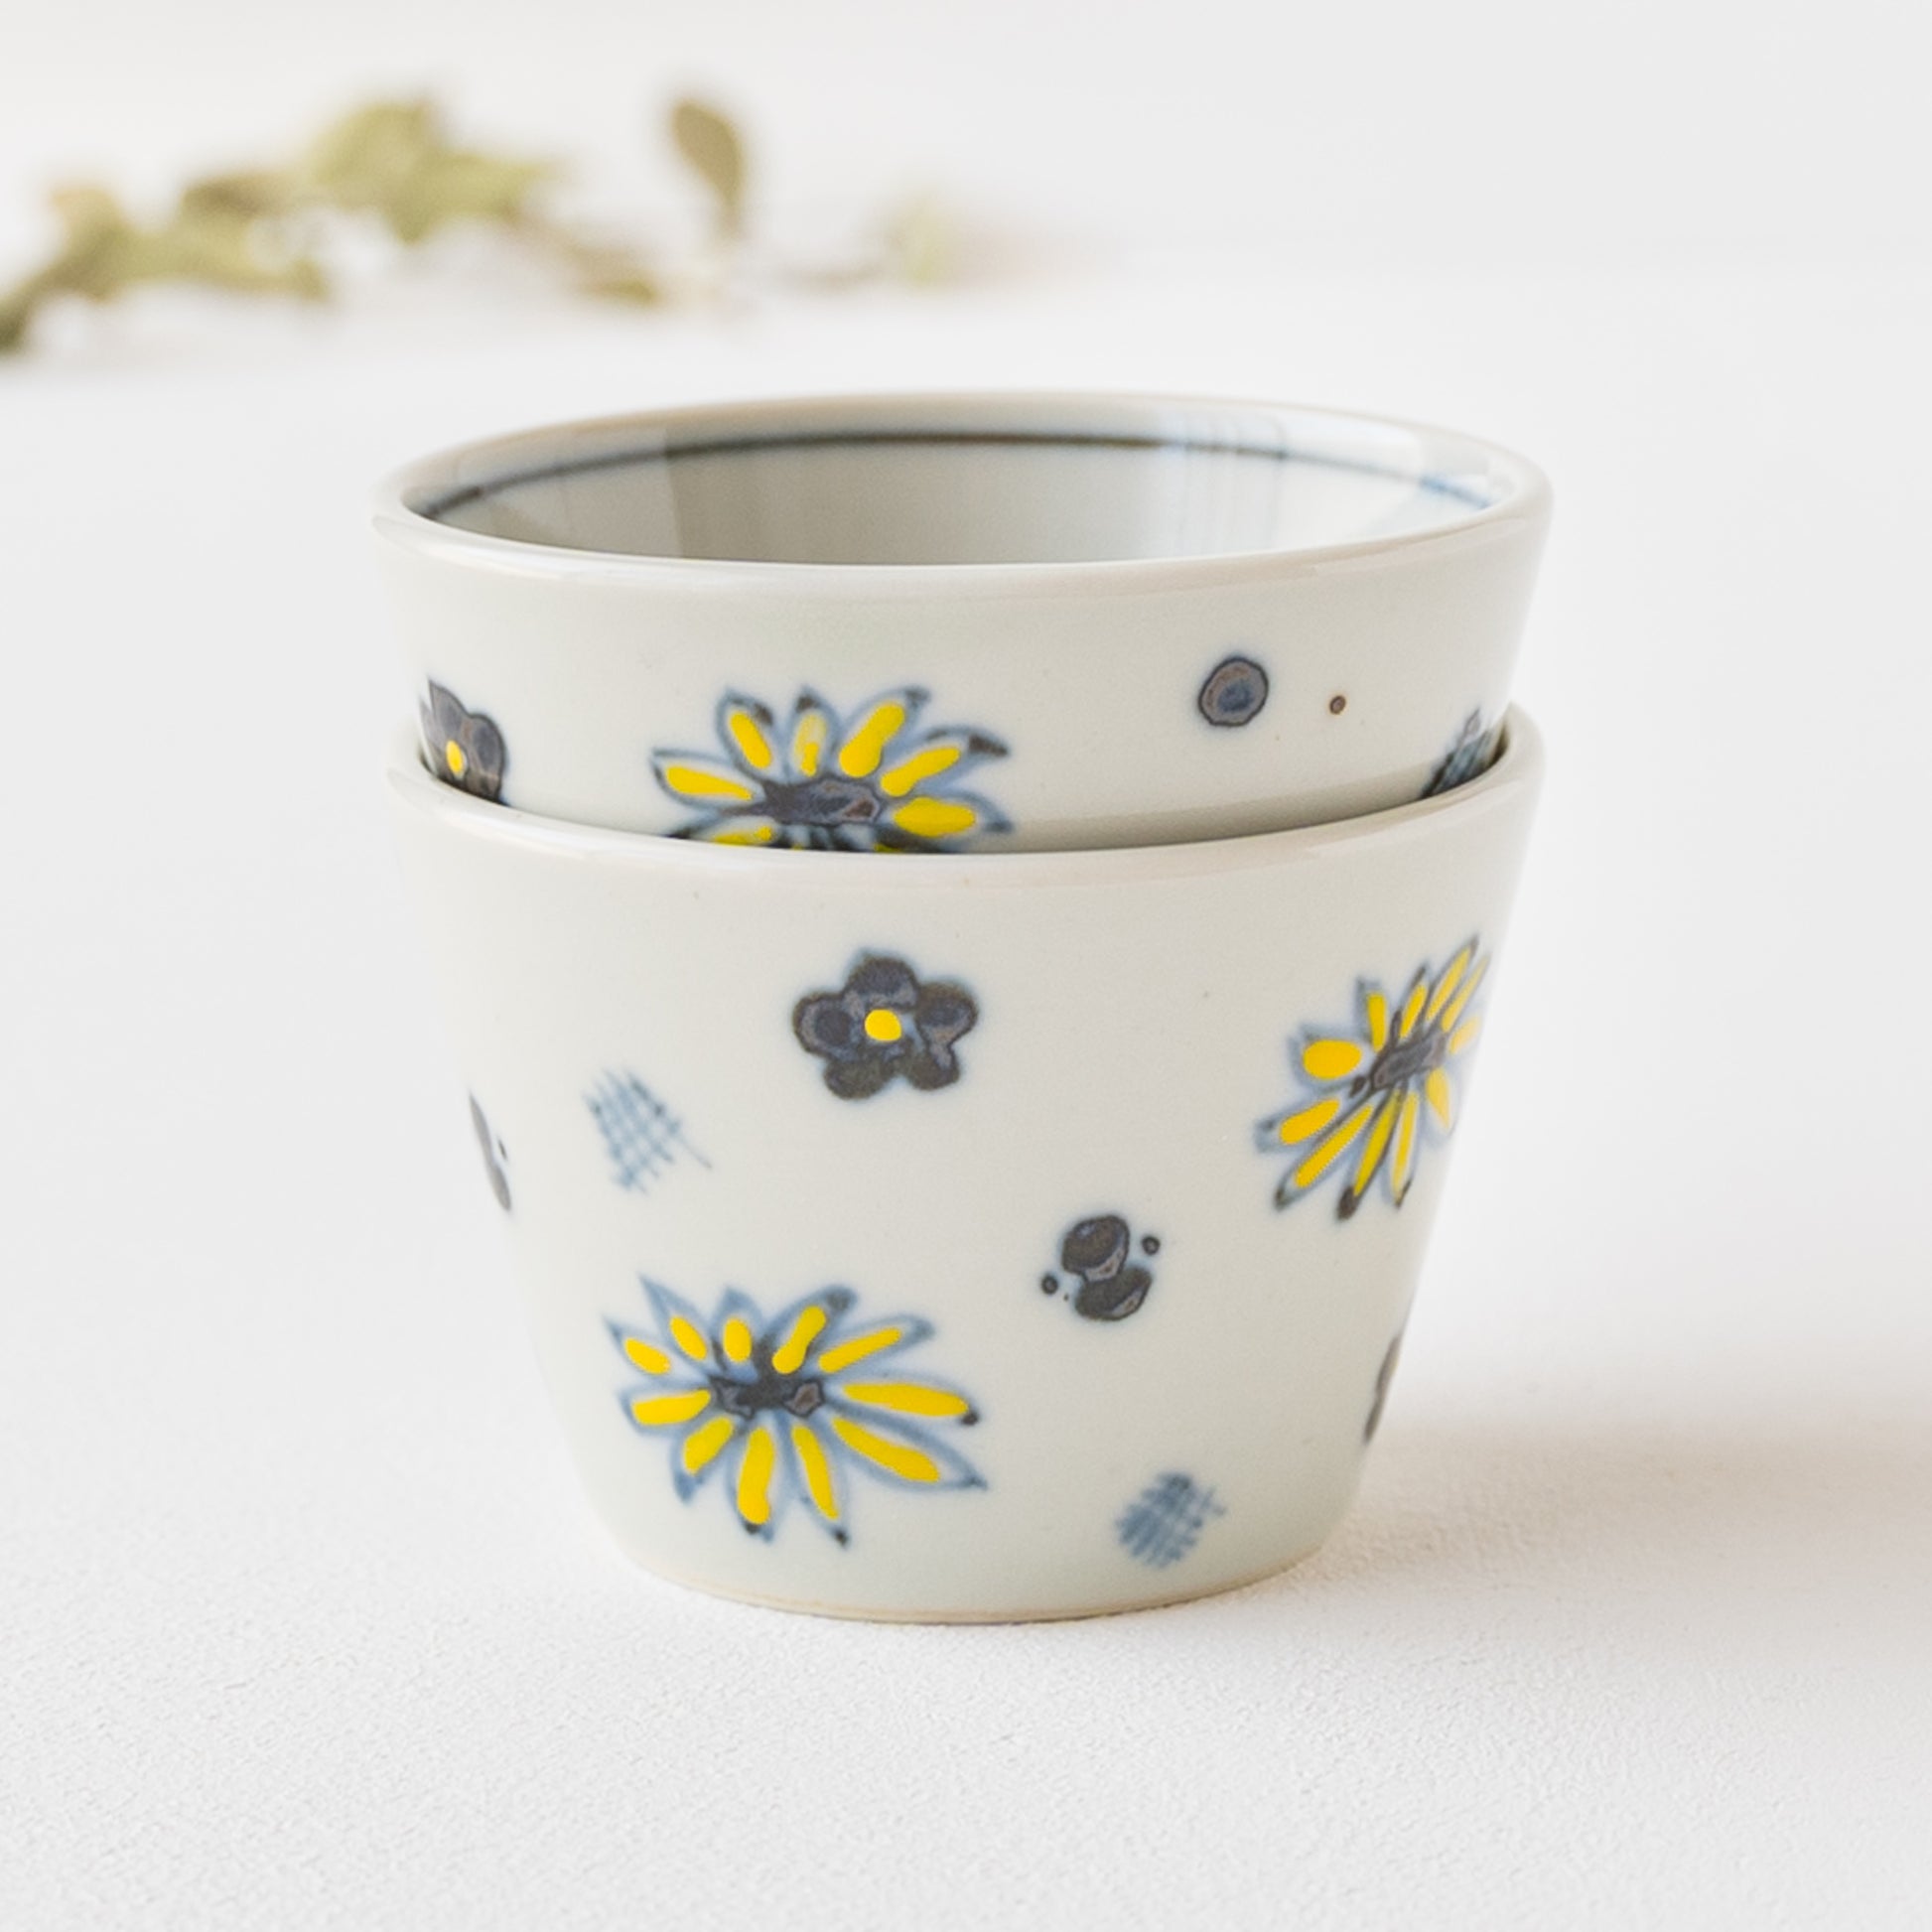 Cute Japanese mug from Arita porcelain